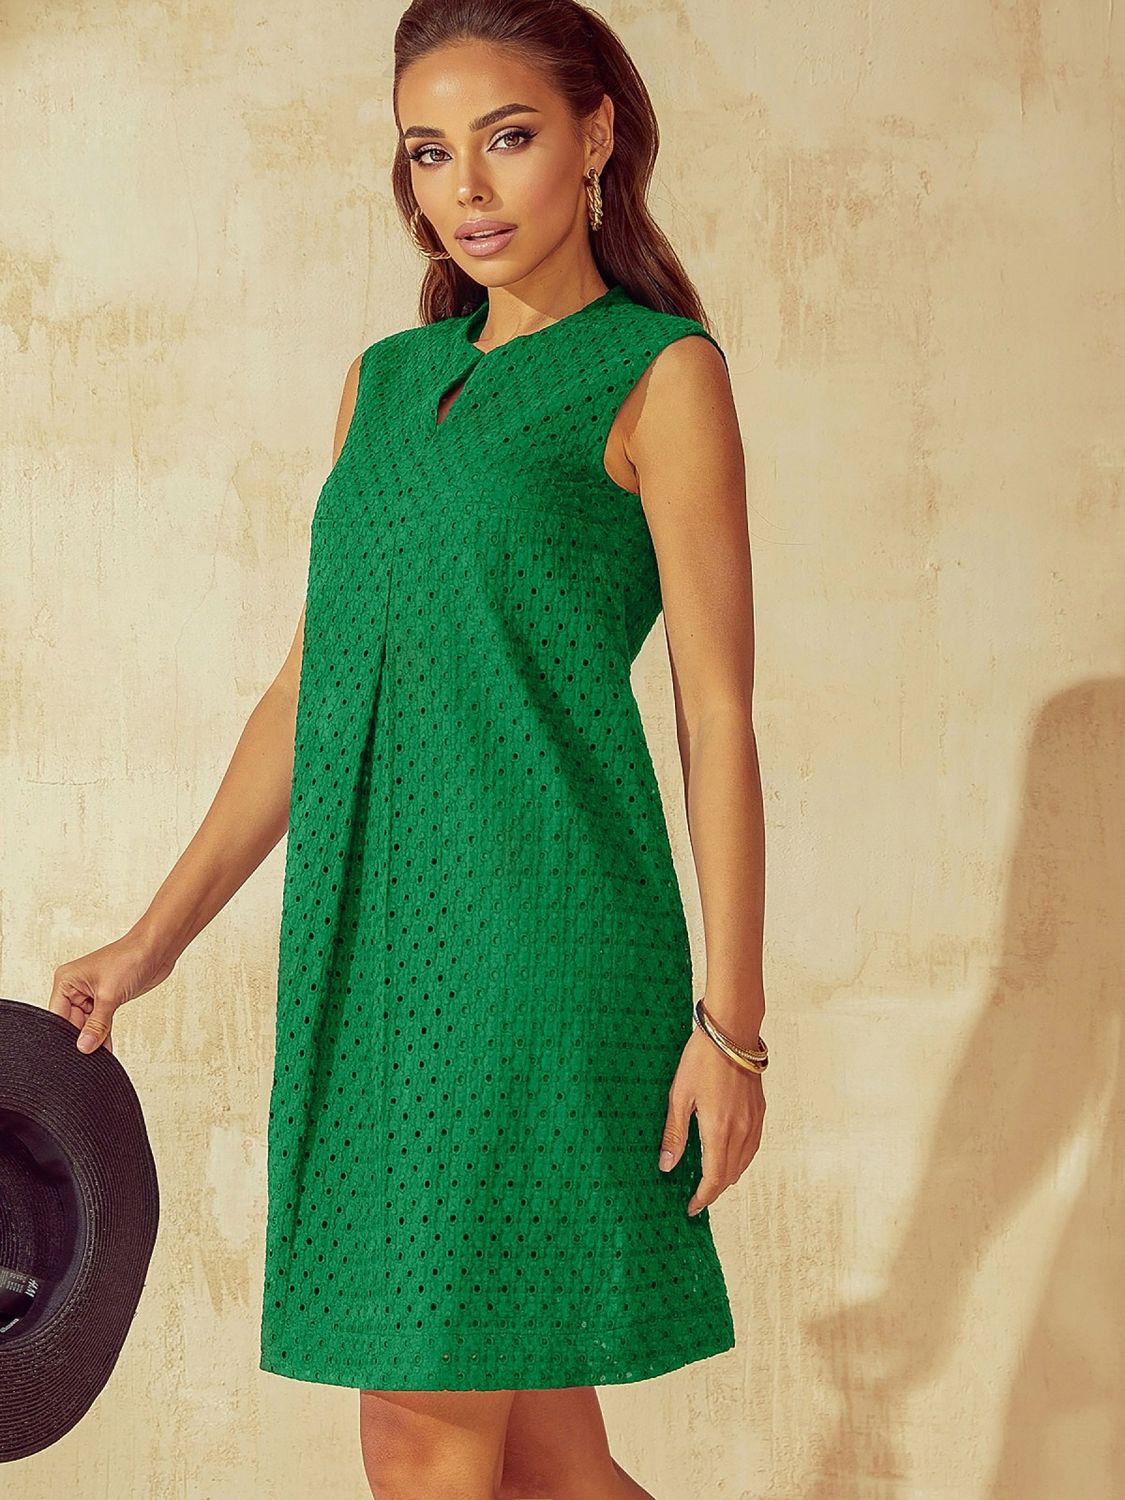 Літня сукня трапеція з прошви зеленого кольору - фото